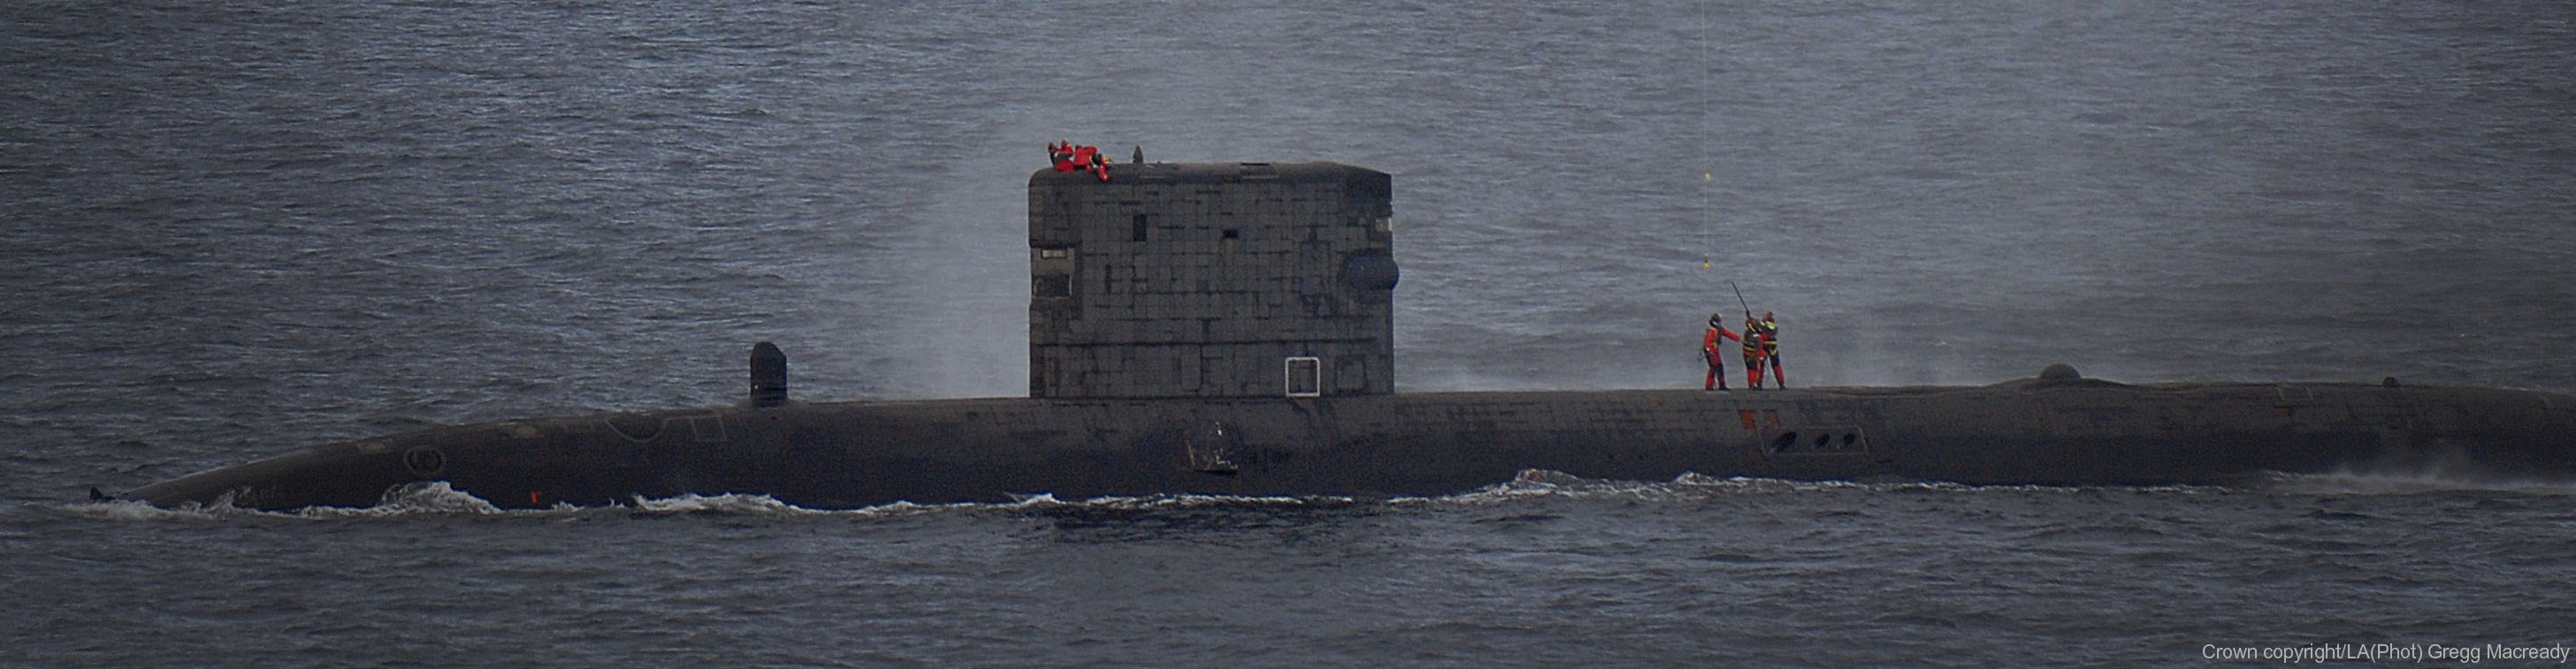 s92 hms talent trafalgar class attack submarine hunter killer royal navy 06